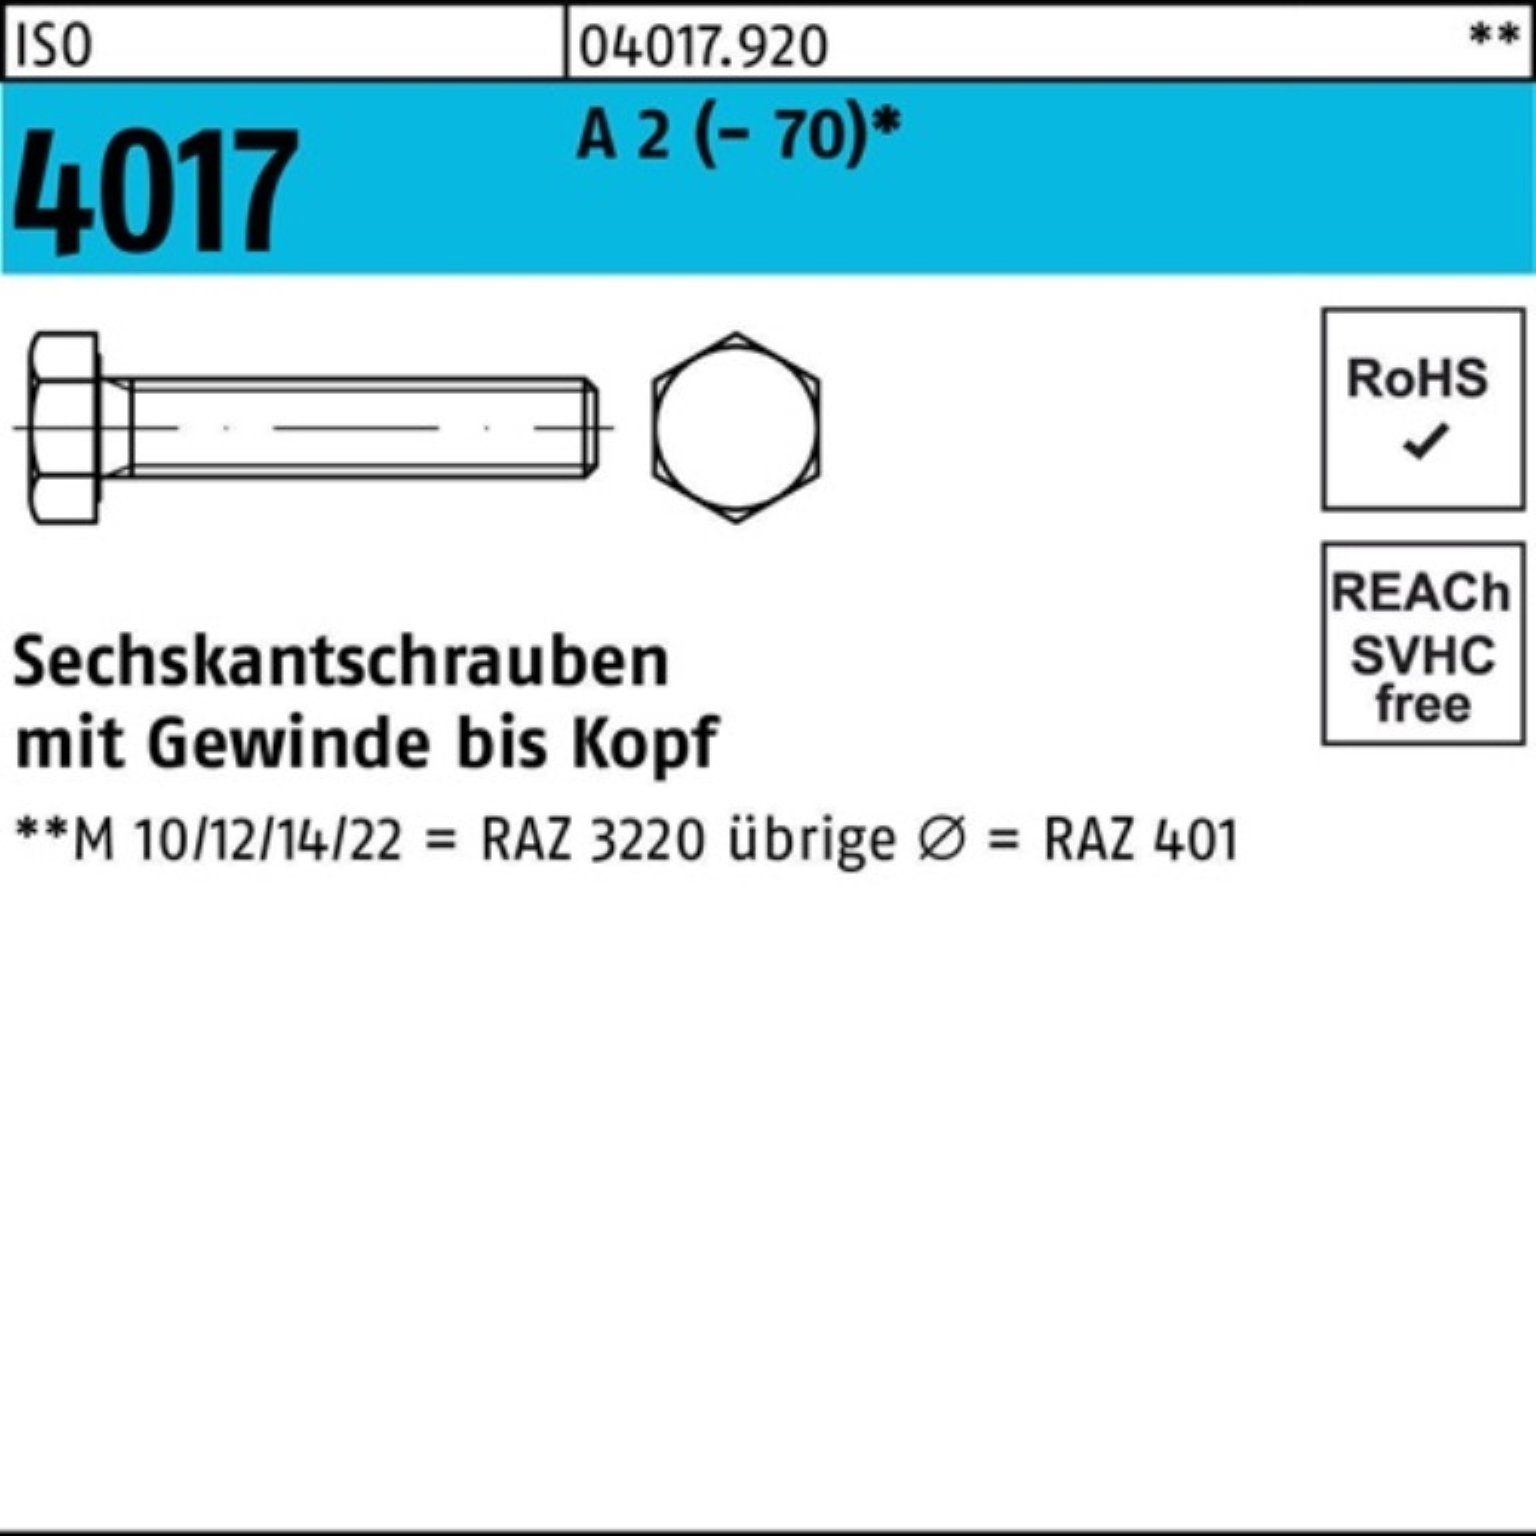 Bufab Sechskantschraube 100er Pack Sechskantschraube ISO 4017 VG M8x 50 A 2 (70) 100 Stück